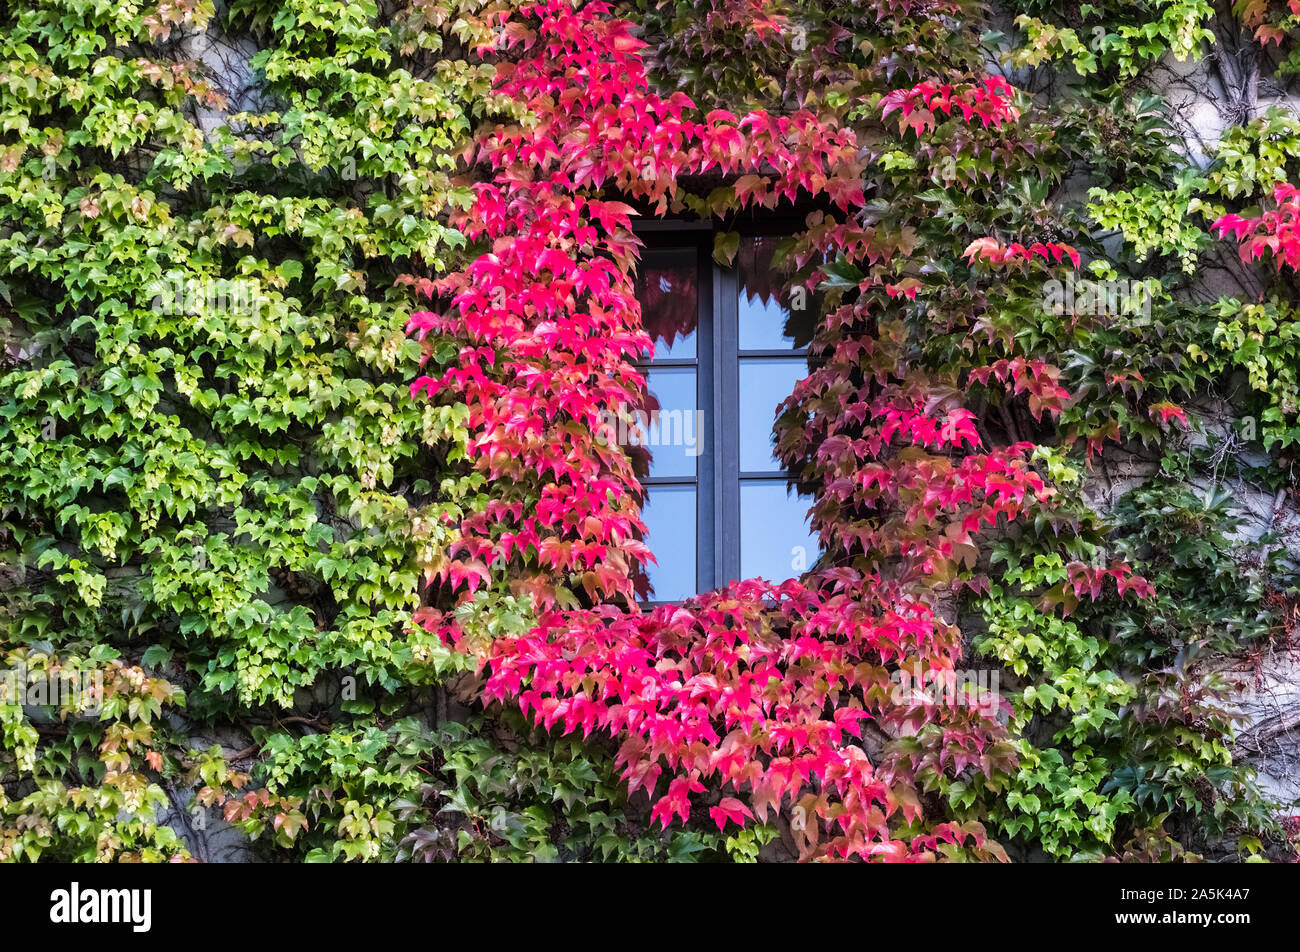 Hojas de vid, Parthenocissus tricuspidata, con colores de otoño crece sobre una pared del edificio, octubre, Munich, Alemania. Foto de stock